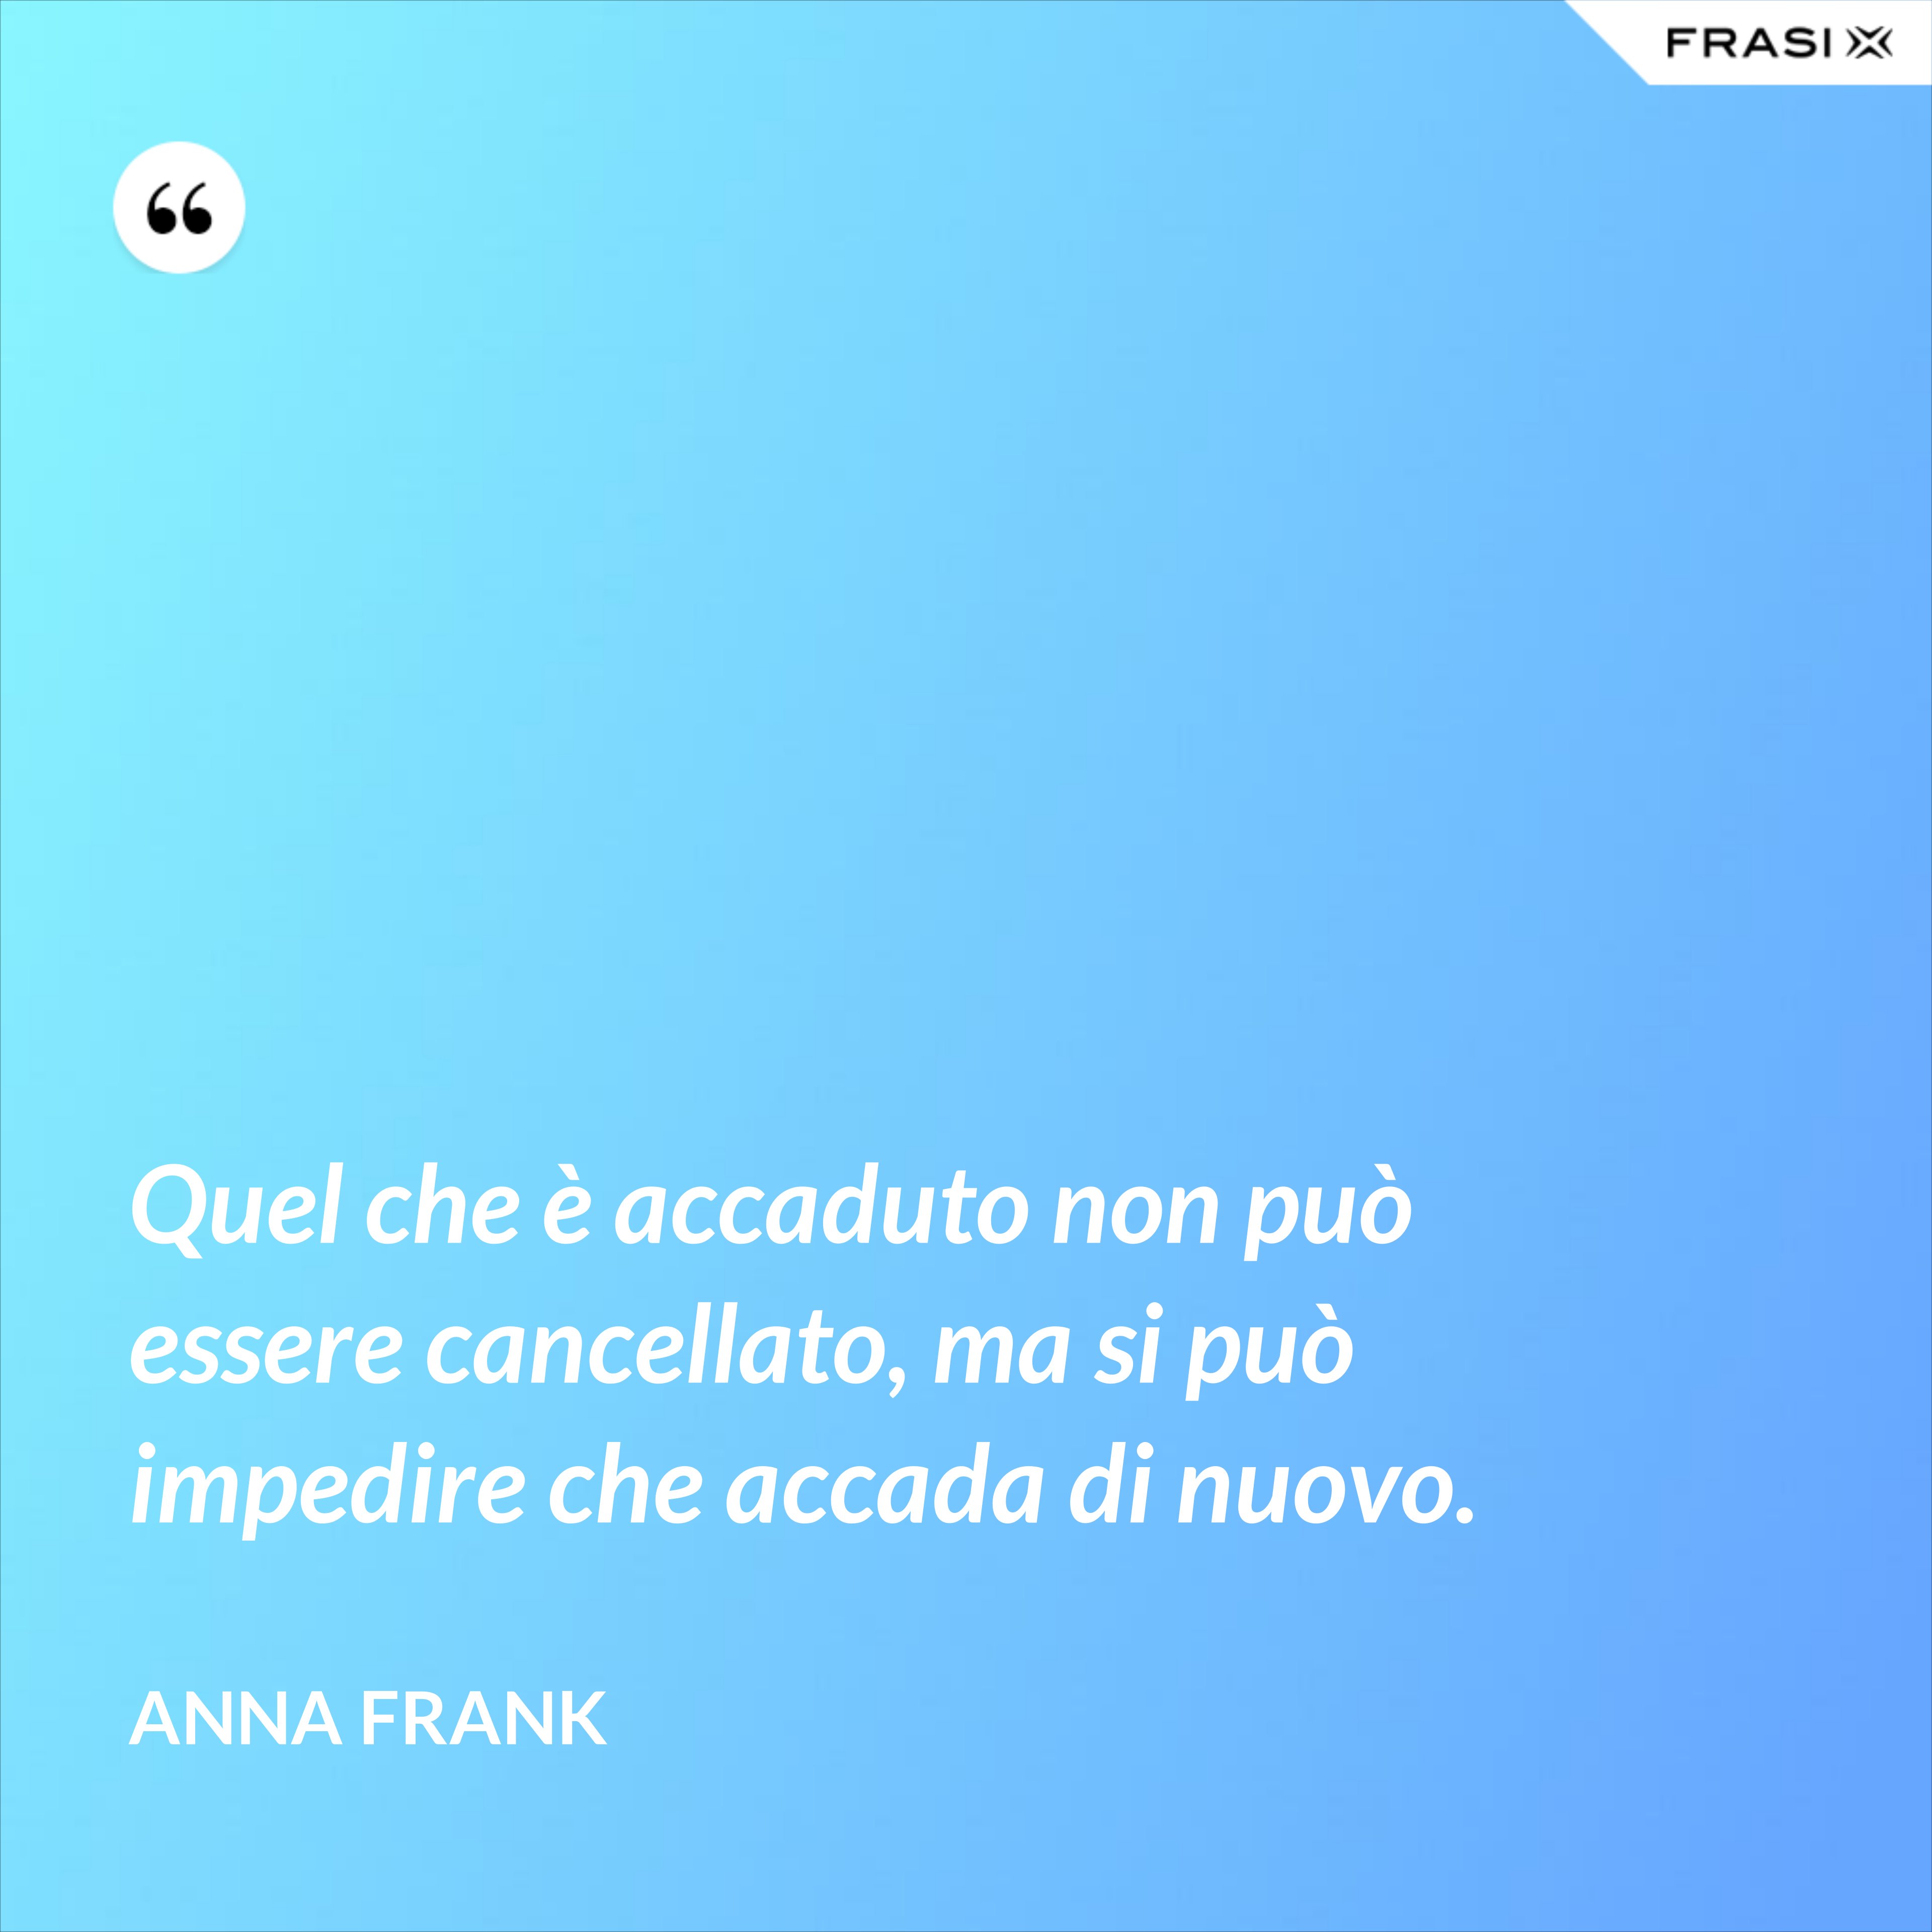 Quel che è accaduto non può essere cancellato, ma si può impedire che accada di nuovo. - Anna Frank